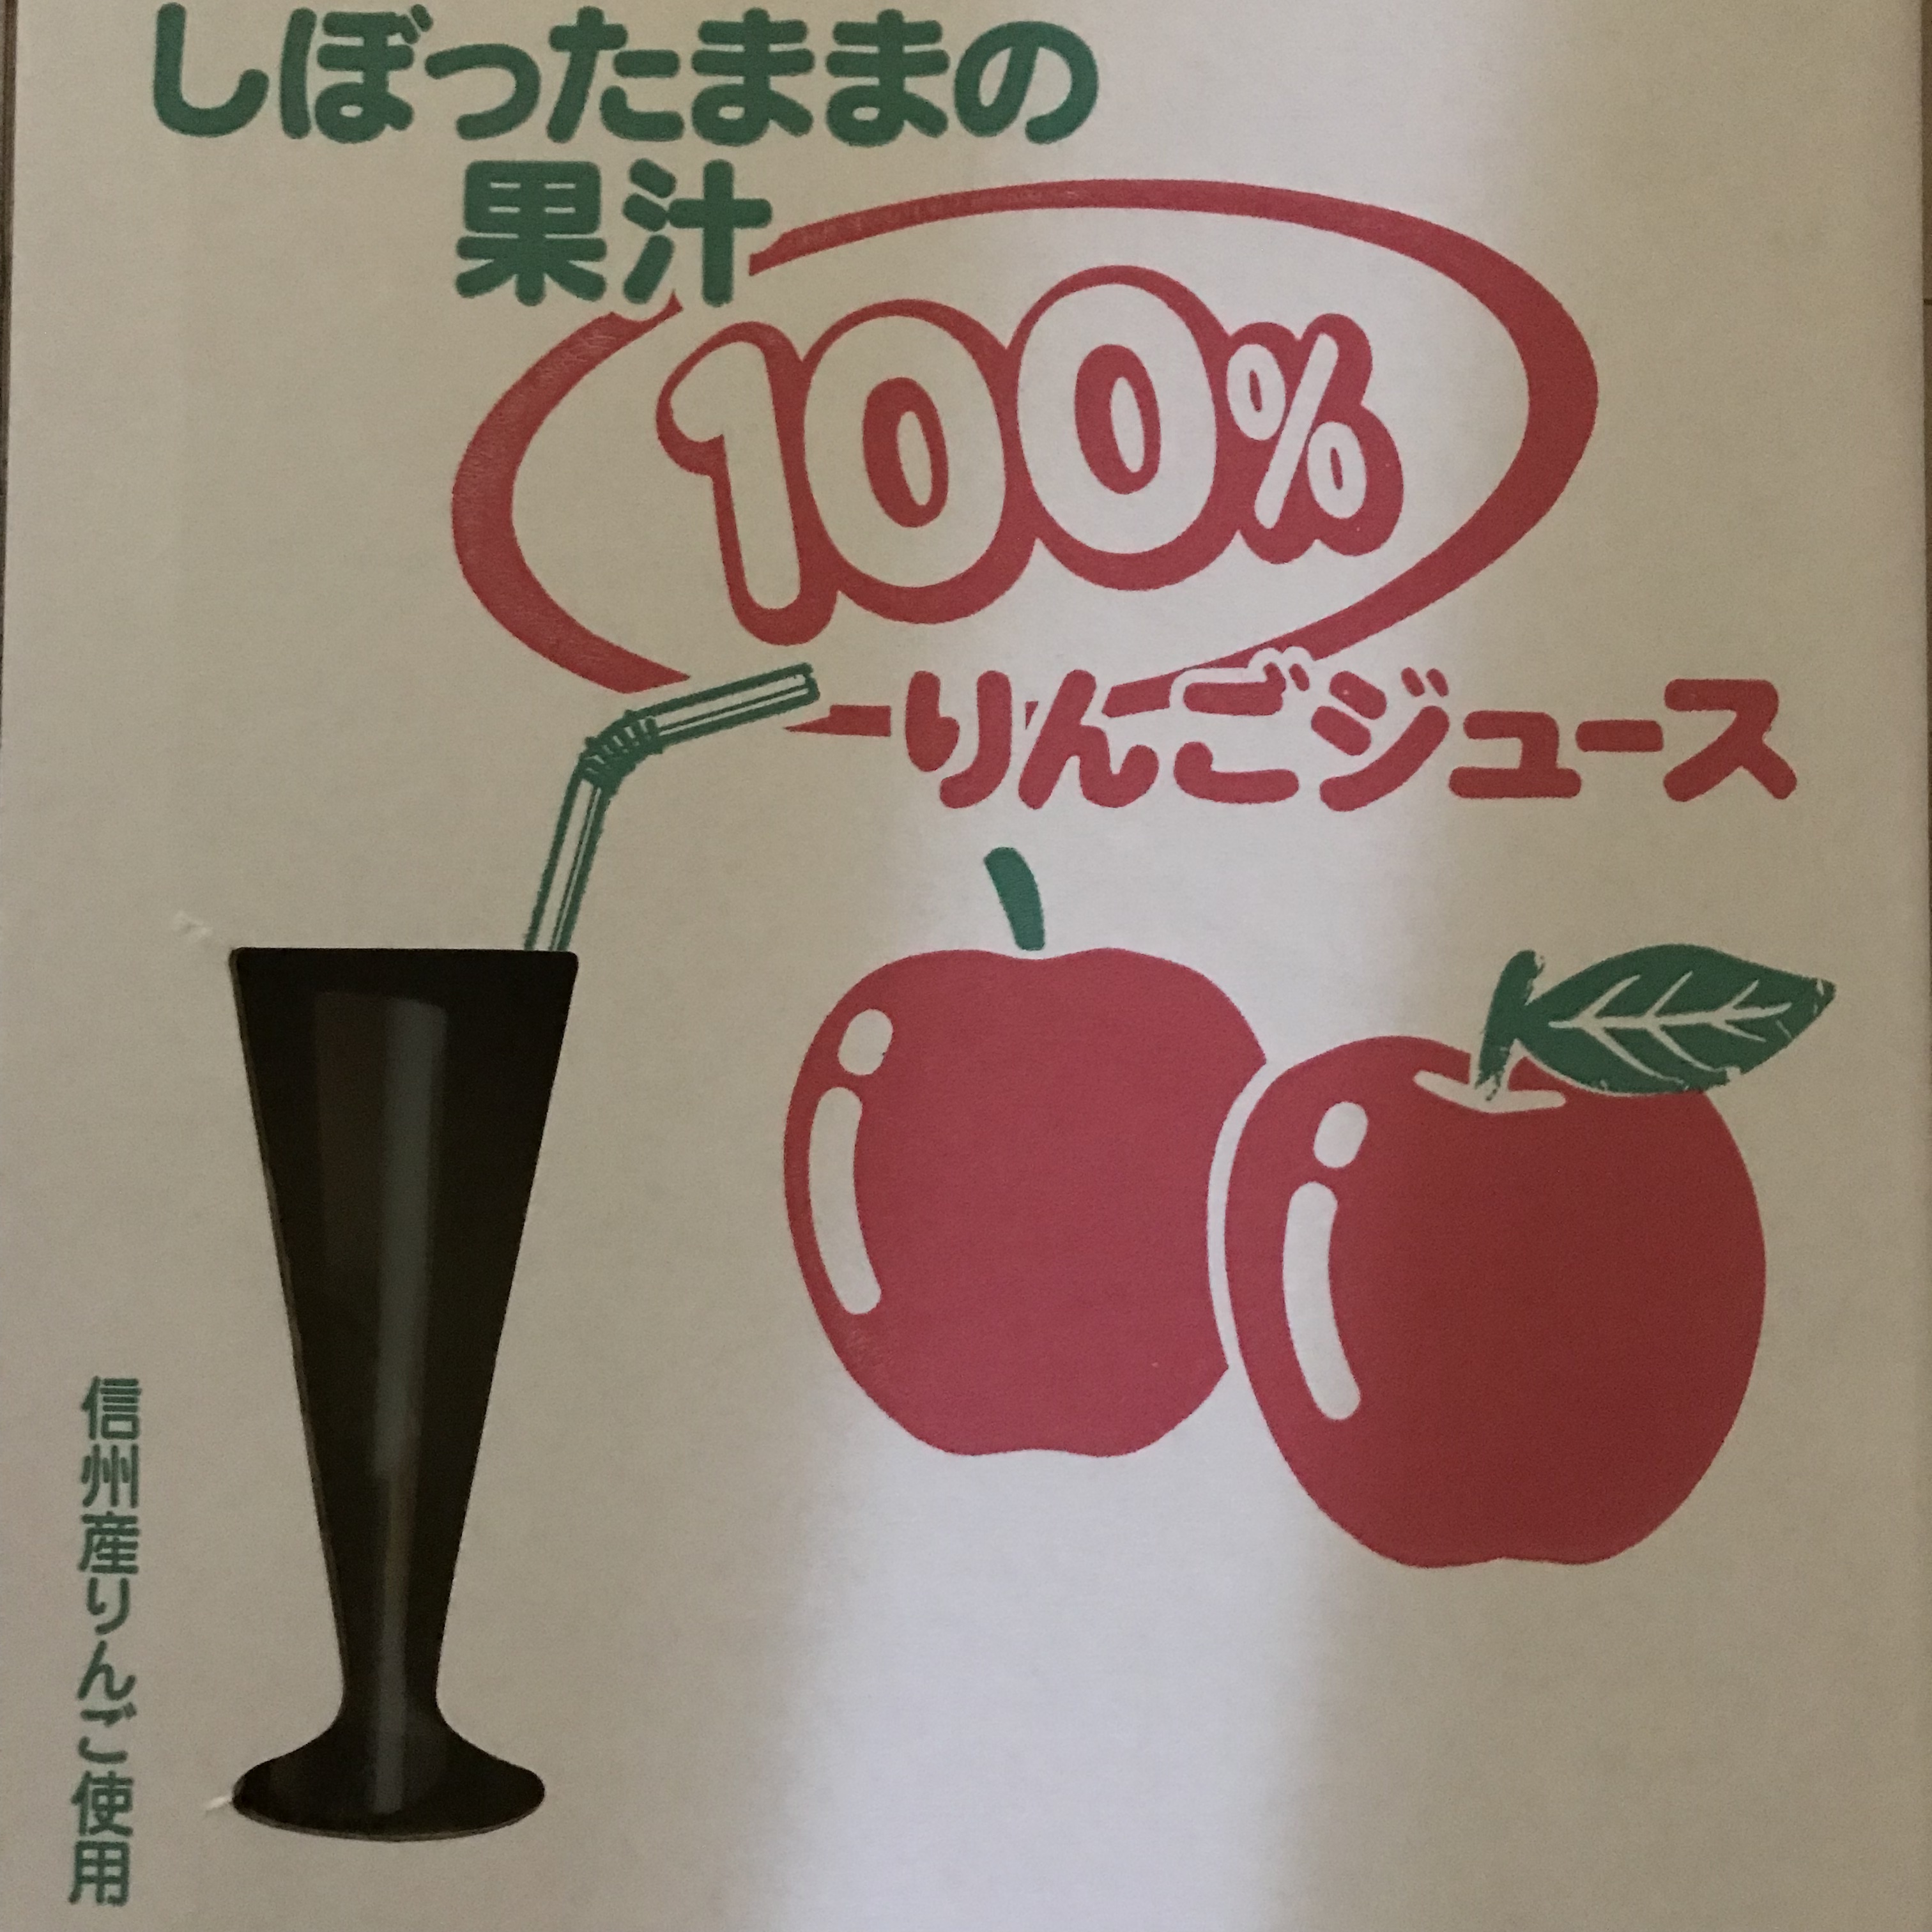 一般用 premium林檎juice シナノスイート 3本セット 720ml入り